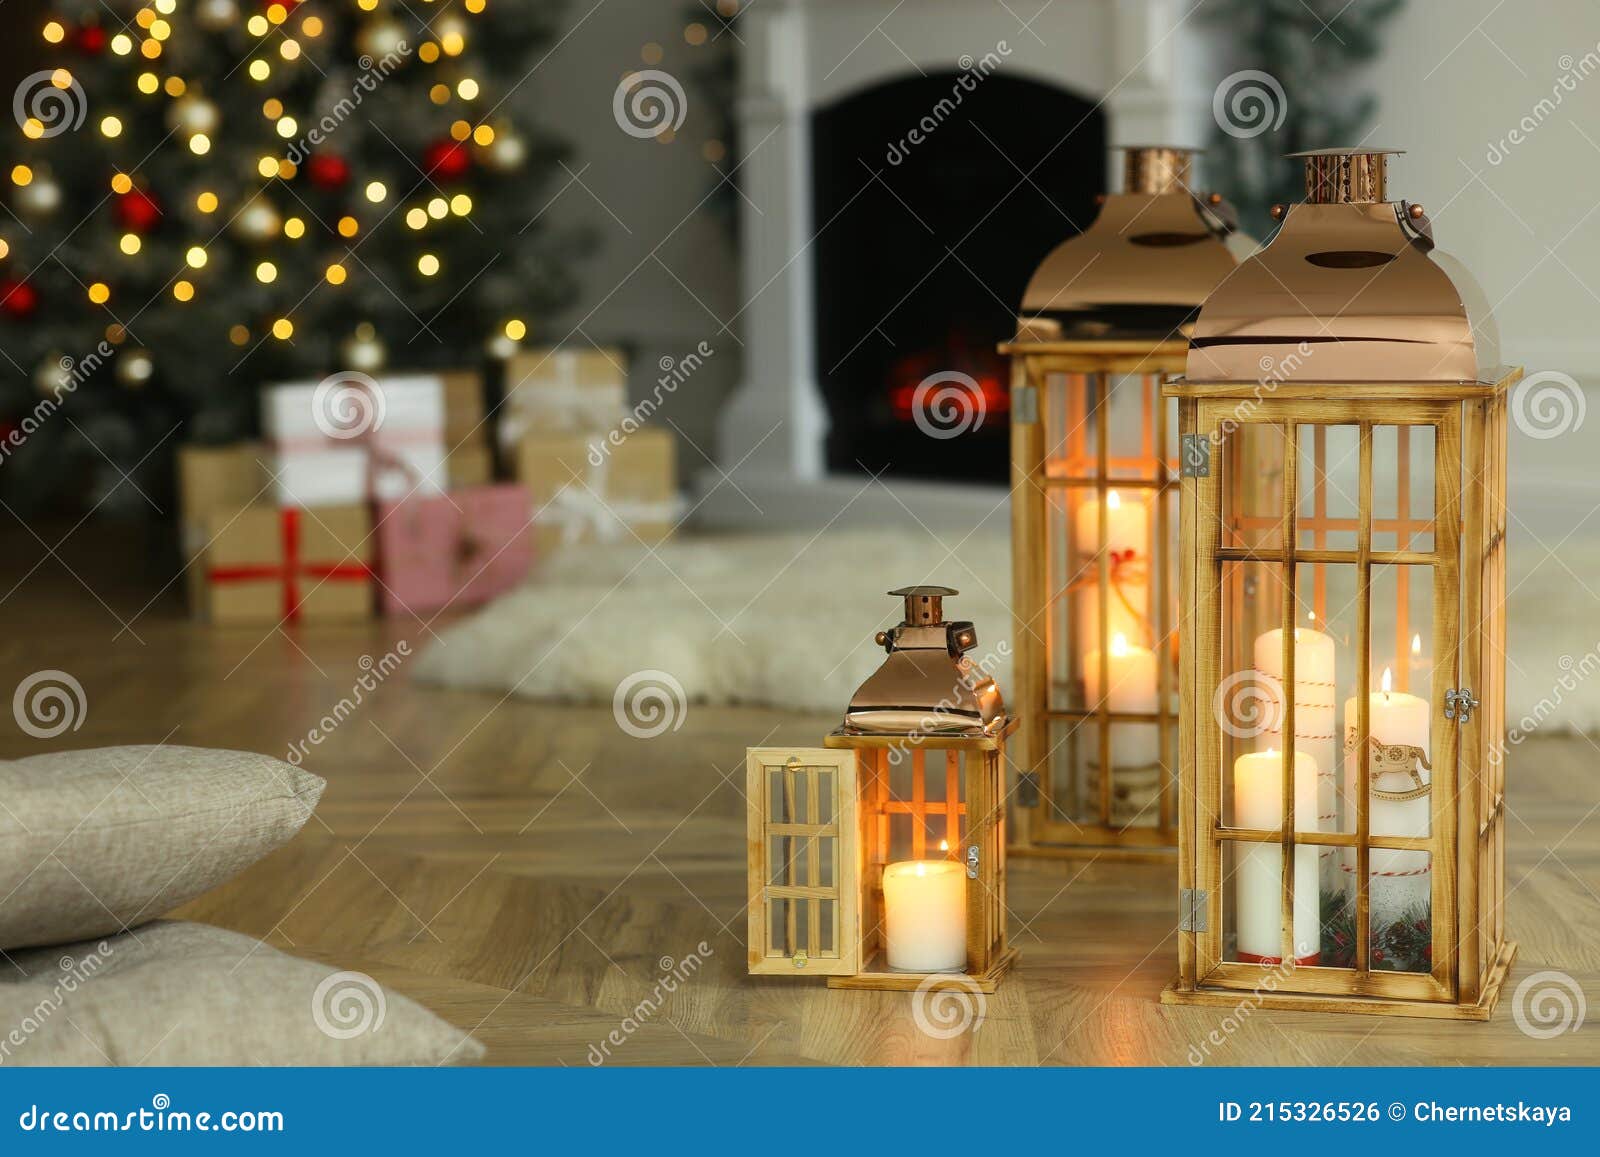 Lanterne Di Grandi Dimensioni Con Luci, Ghirlande E Regali Si Trovano Sul  Pavimento Della Stanza. Il Salotto Di Natale è Decorato Immagine Stock -  Immagine di sfondo, celebrazione: 232406675